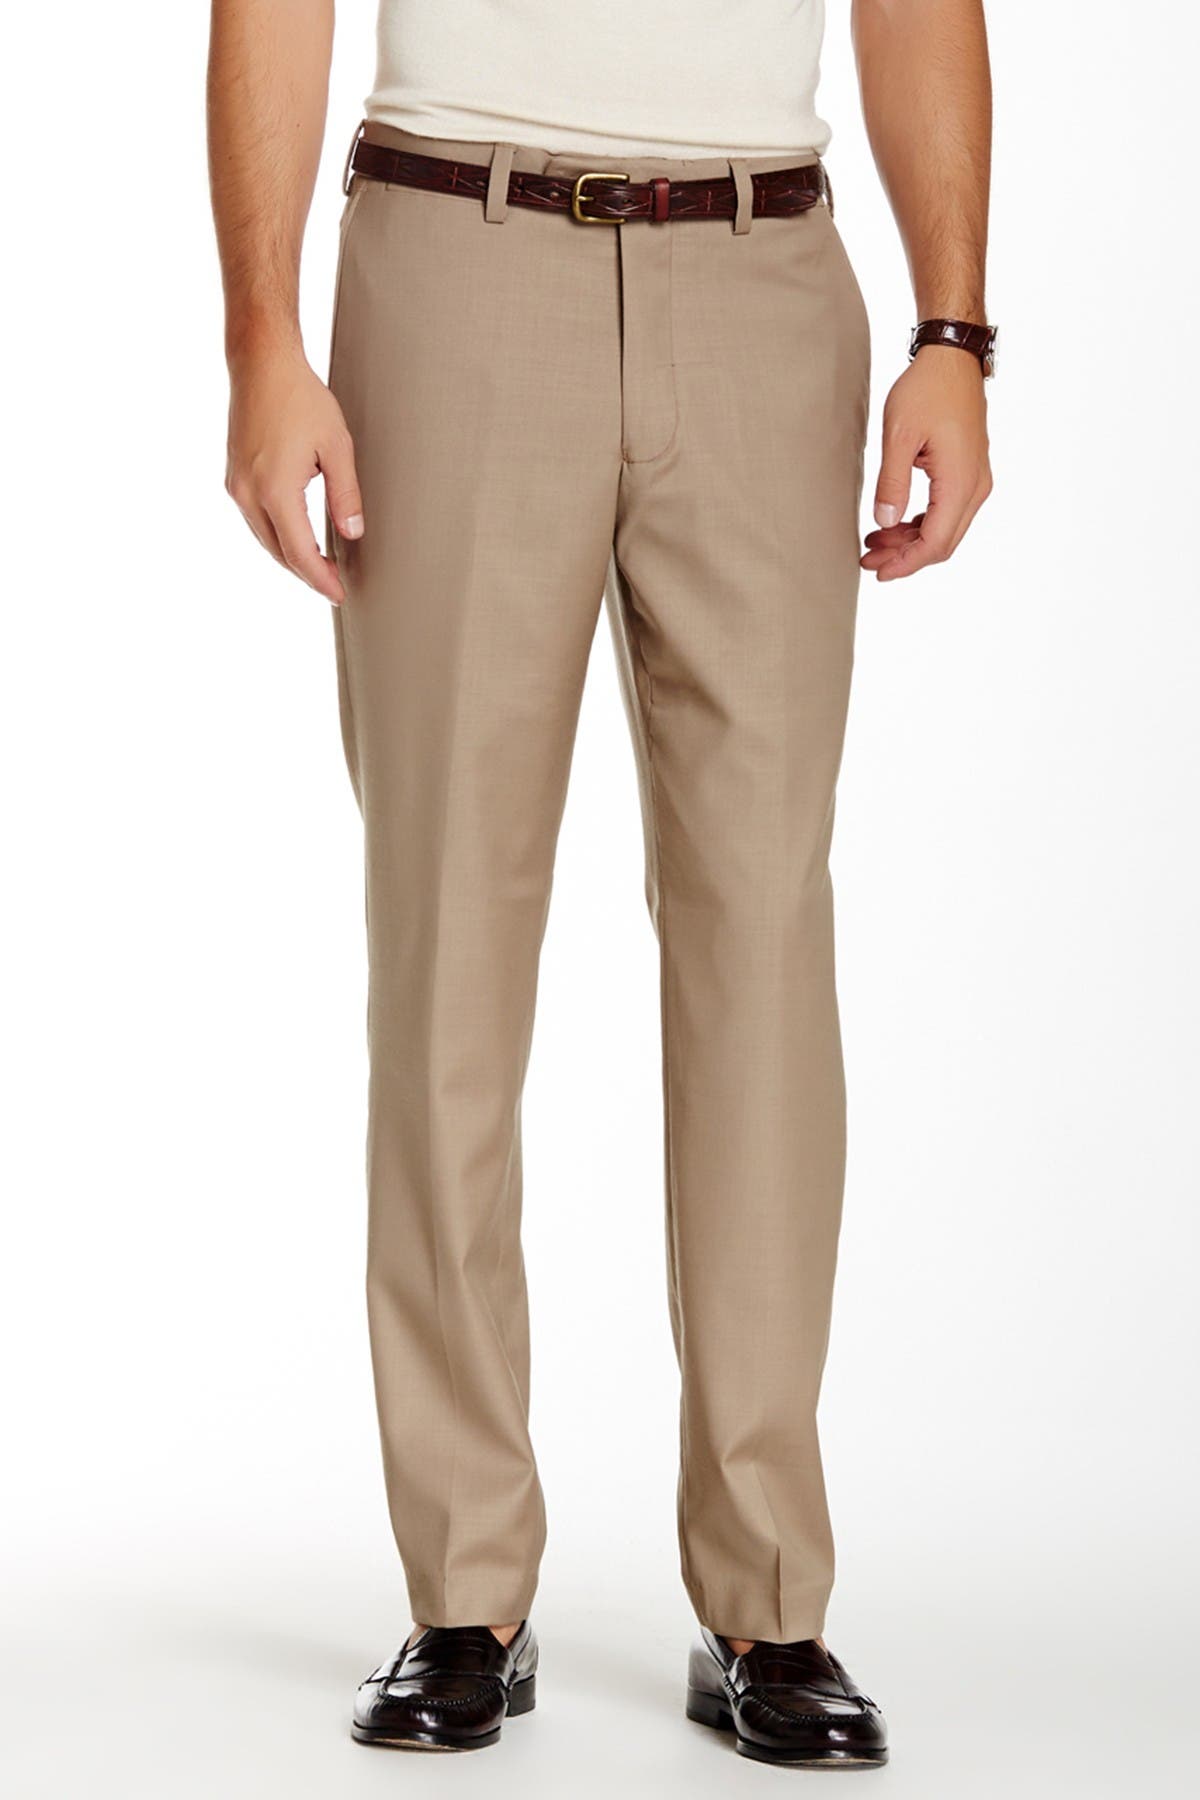 Louis Raphael | Solid Stretch Dress Slim Fit Pants - 30-34